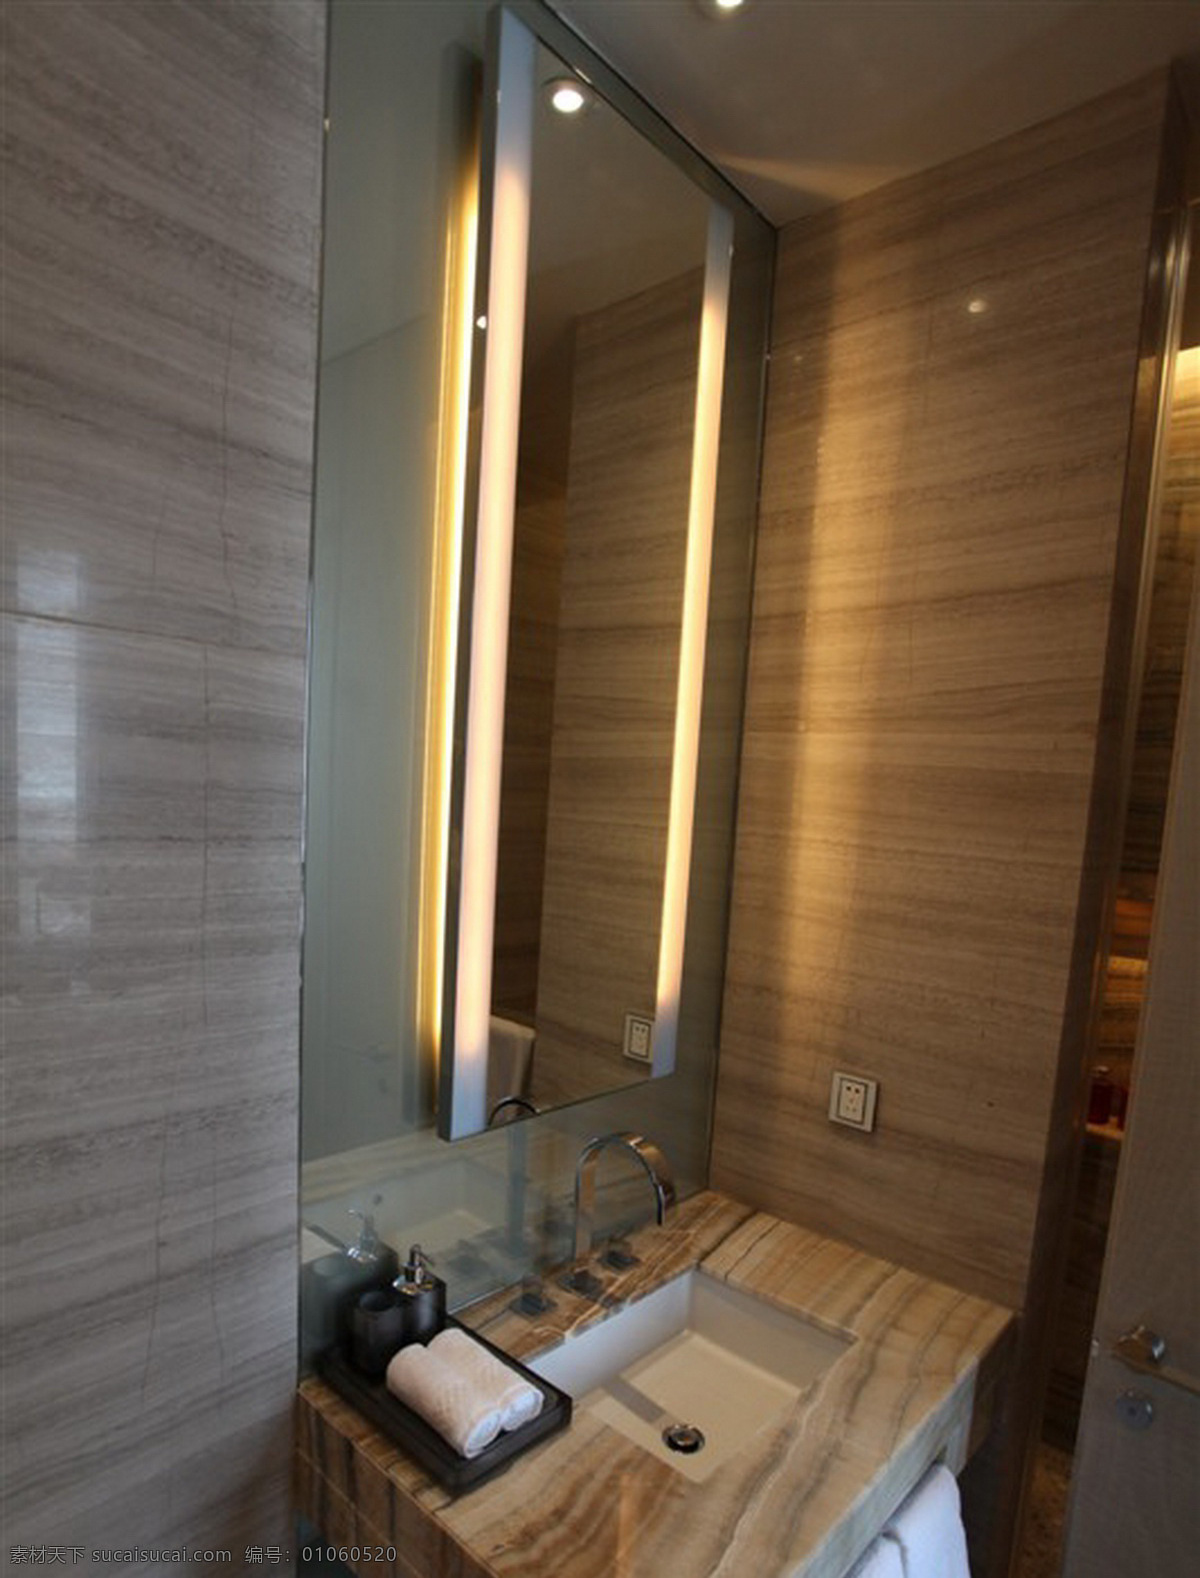 现代 简约 浴室 长方形 镜子 室内装修 效果图 木材 纹理 洗手台 浴室装修 卫生间装修 纹理背景墙